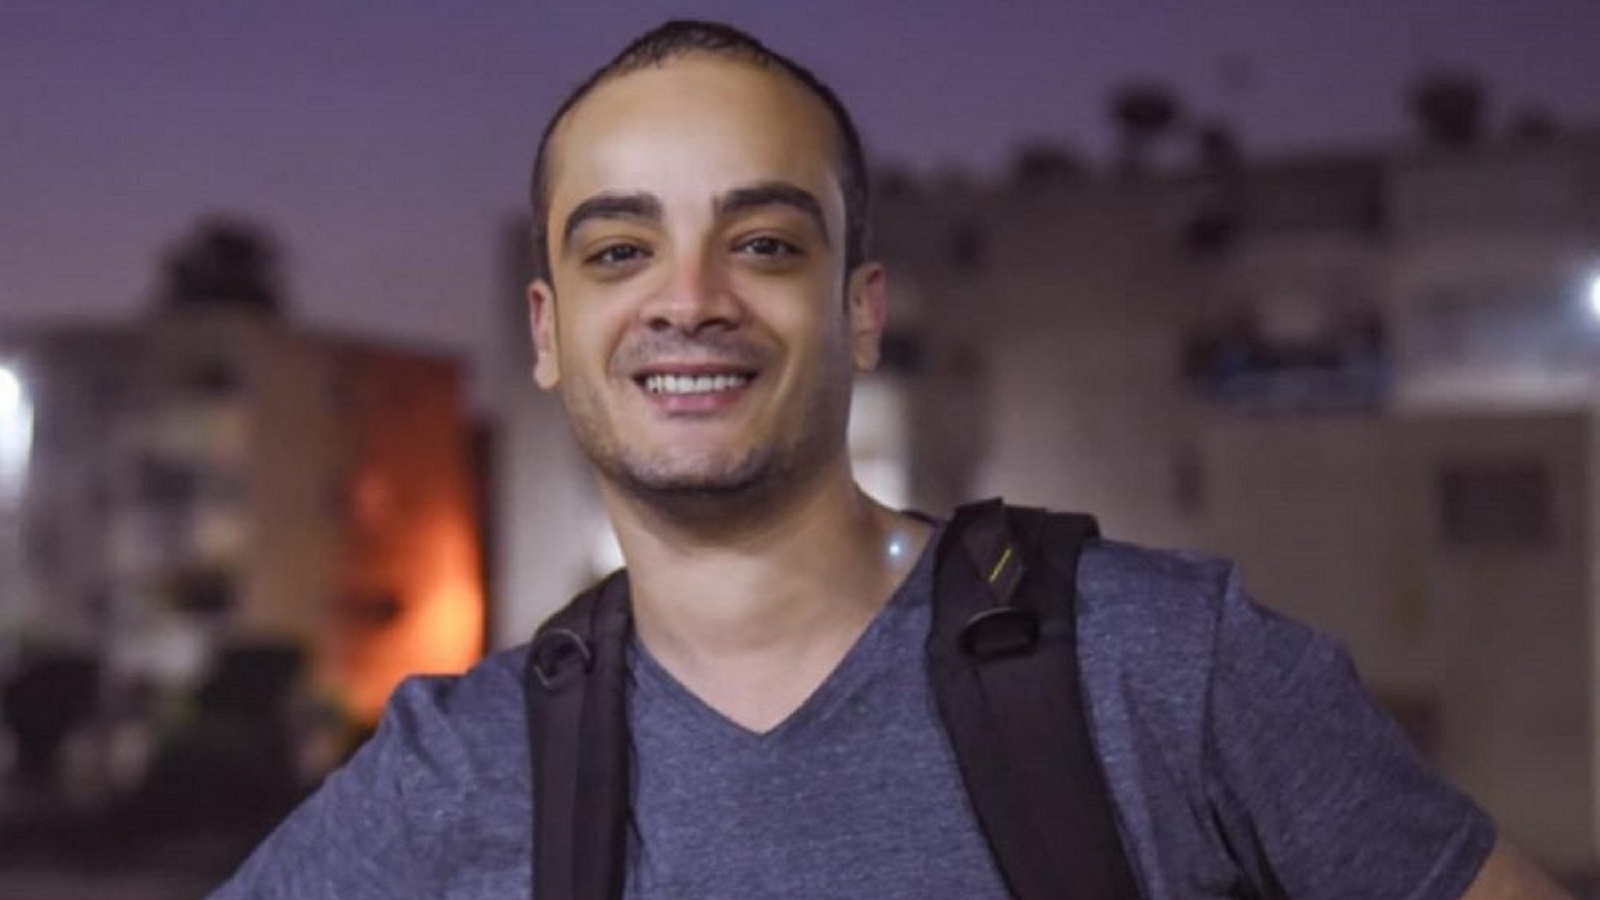 مصر:صحافي كشف فساداً فإحتجز بتهمة التعامل مع "الجزيرة"